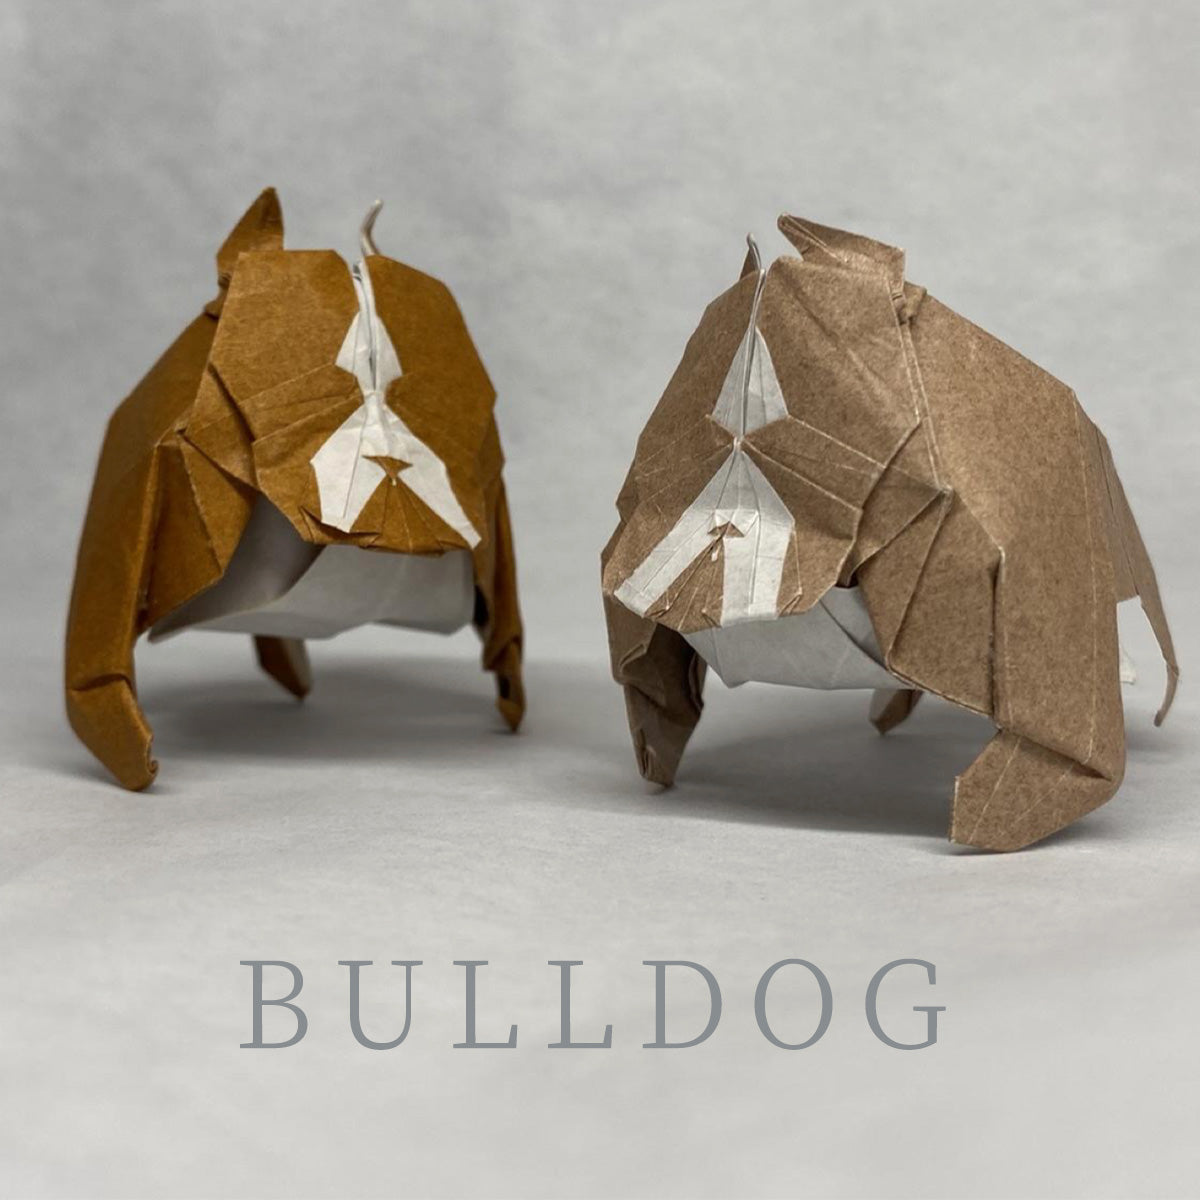 Bulldog photodiagrams by 94